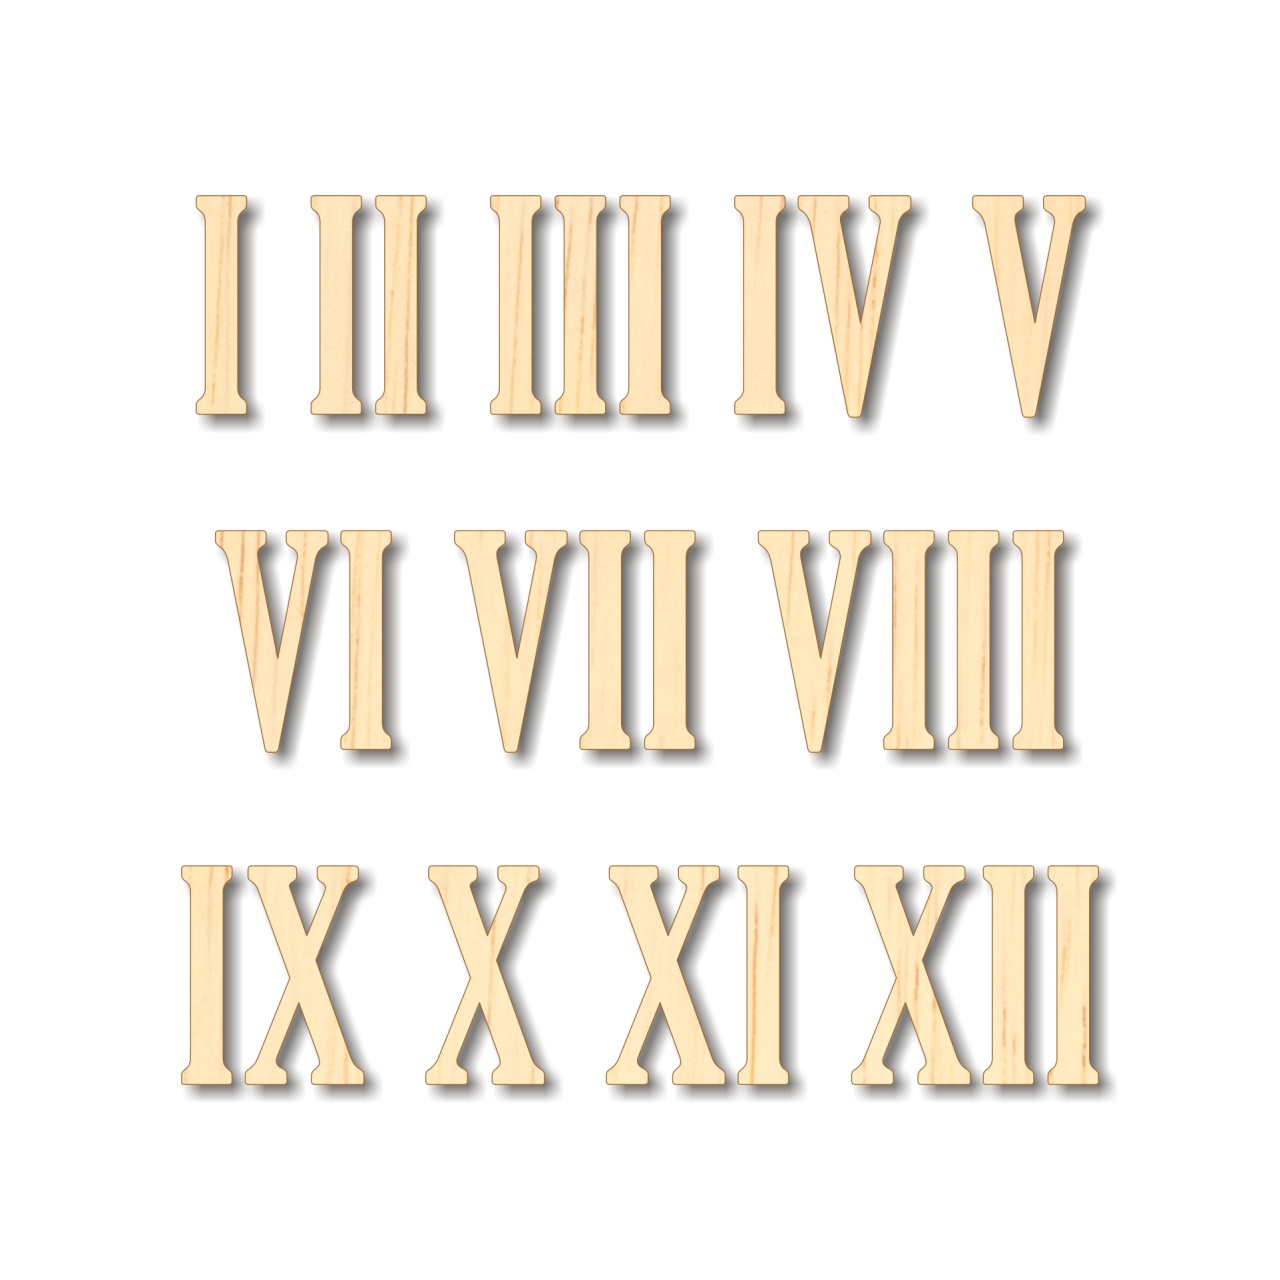 Cifre romane pentru ceas 1-12, 2 cm, HDF alb :: 2 cm